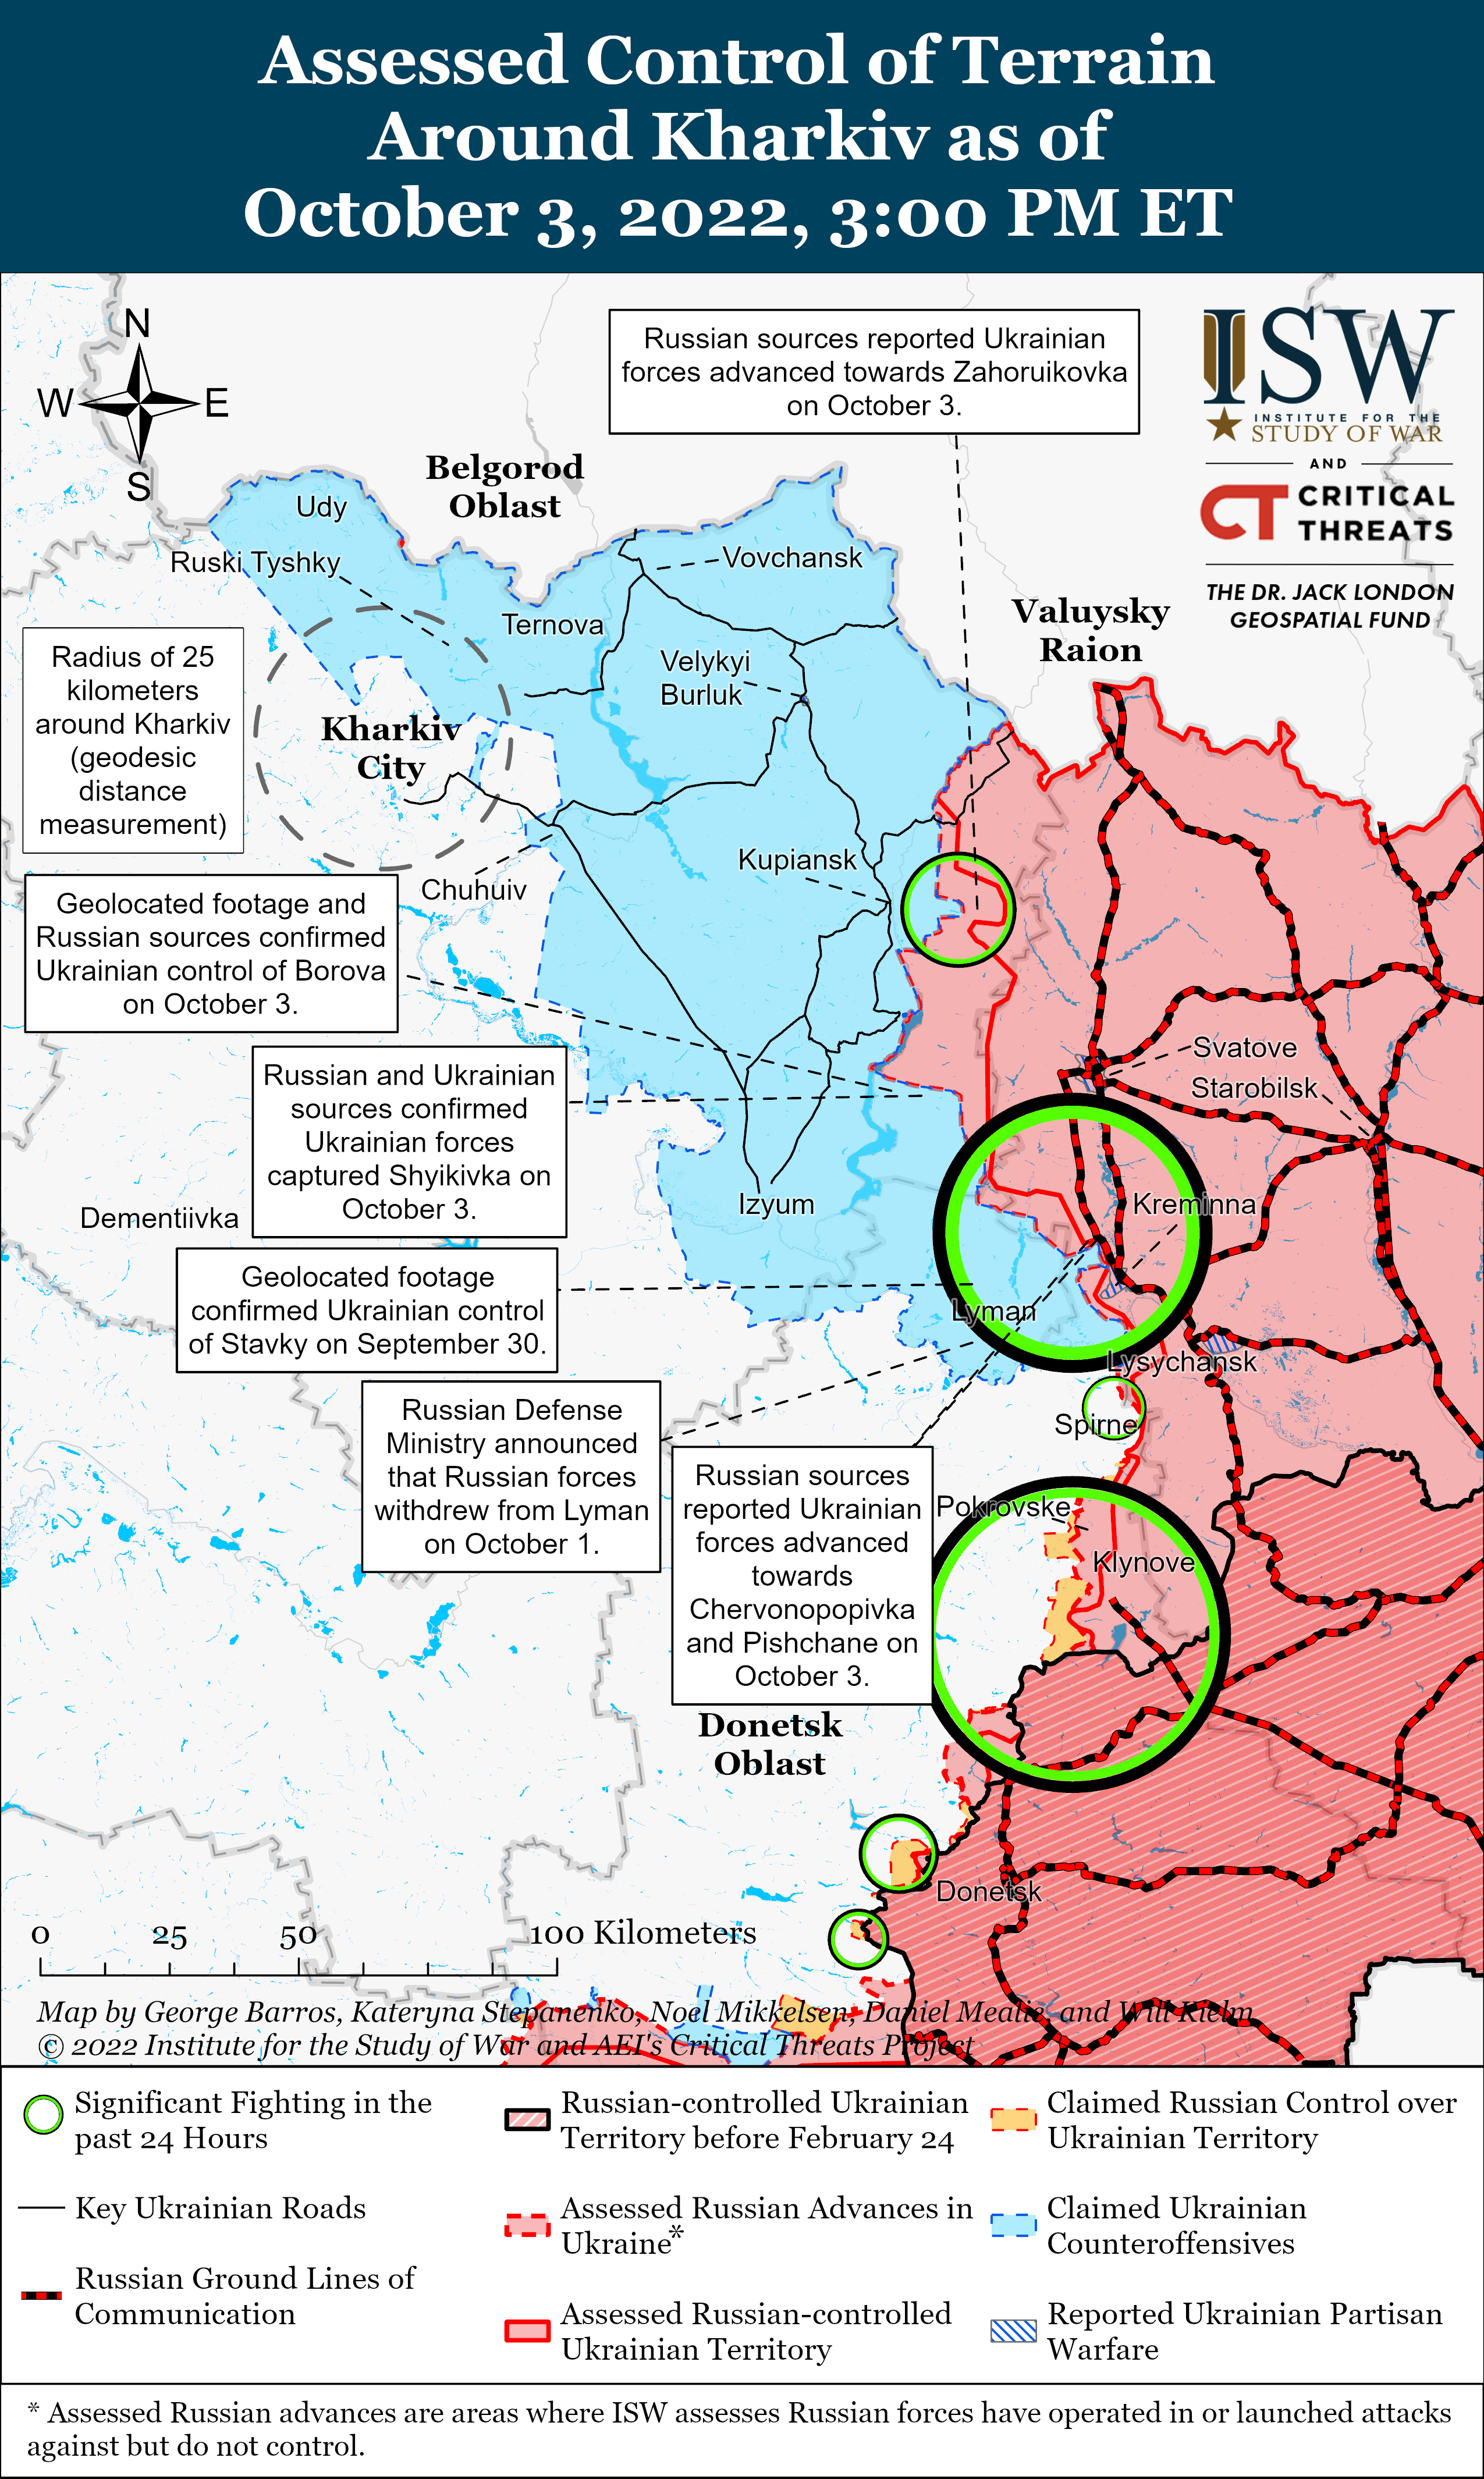 Украинские войска могли прорвать границу Луганской области в направлении Кременной